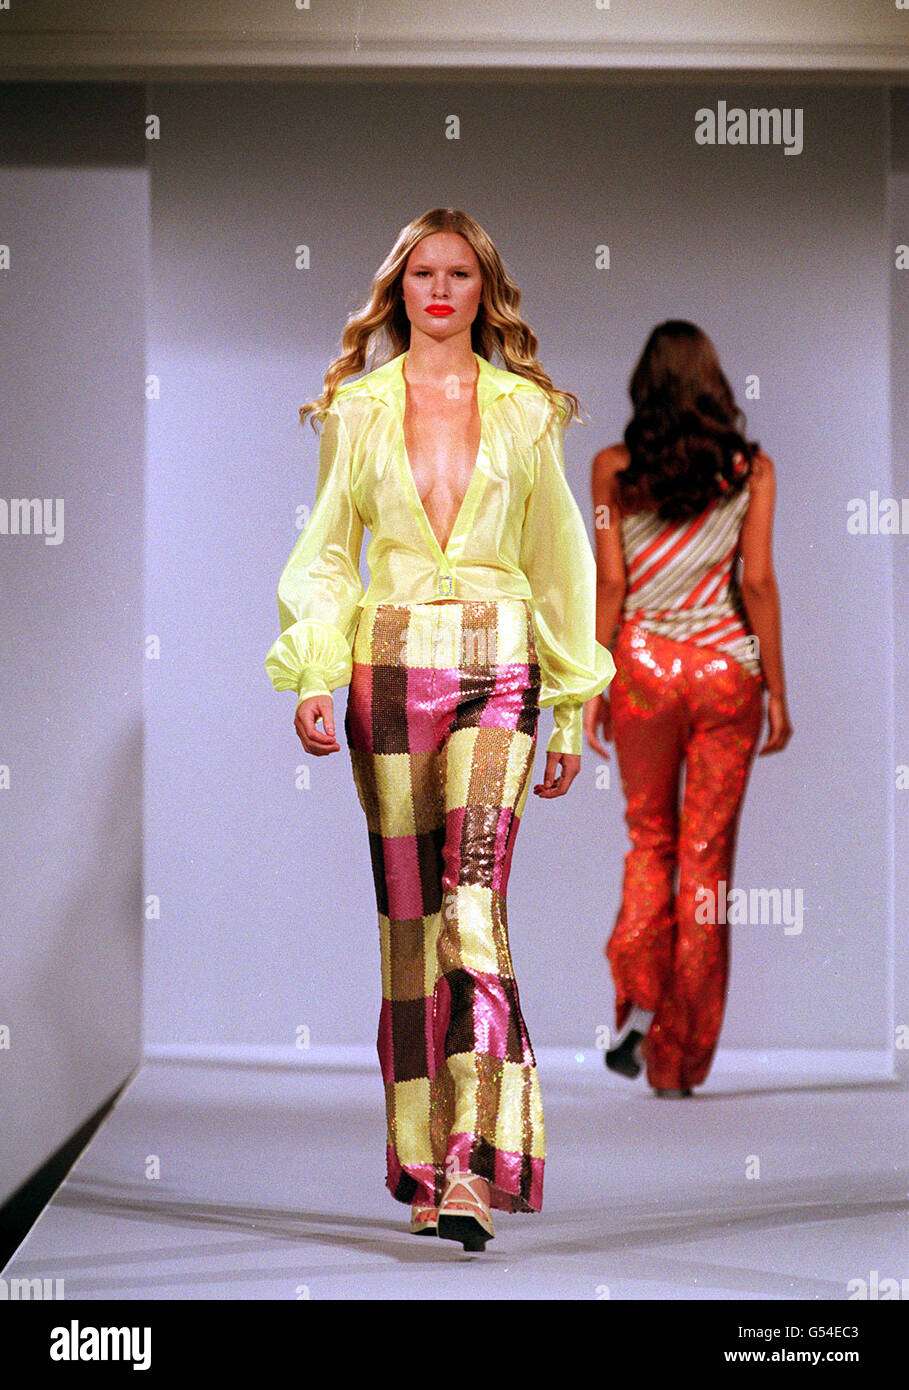 Un modello indossa una blusa gialla non bottonata e pantaloni a scacchi della designer Maria Grachvogel ad Harrods, durante la London Fashion Week. Foto Stock